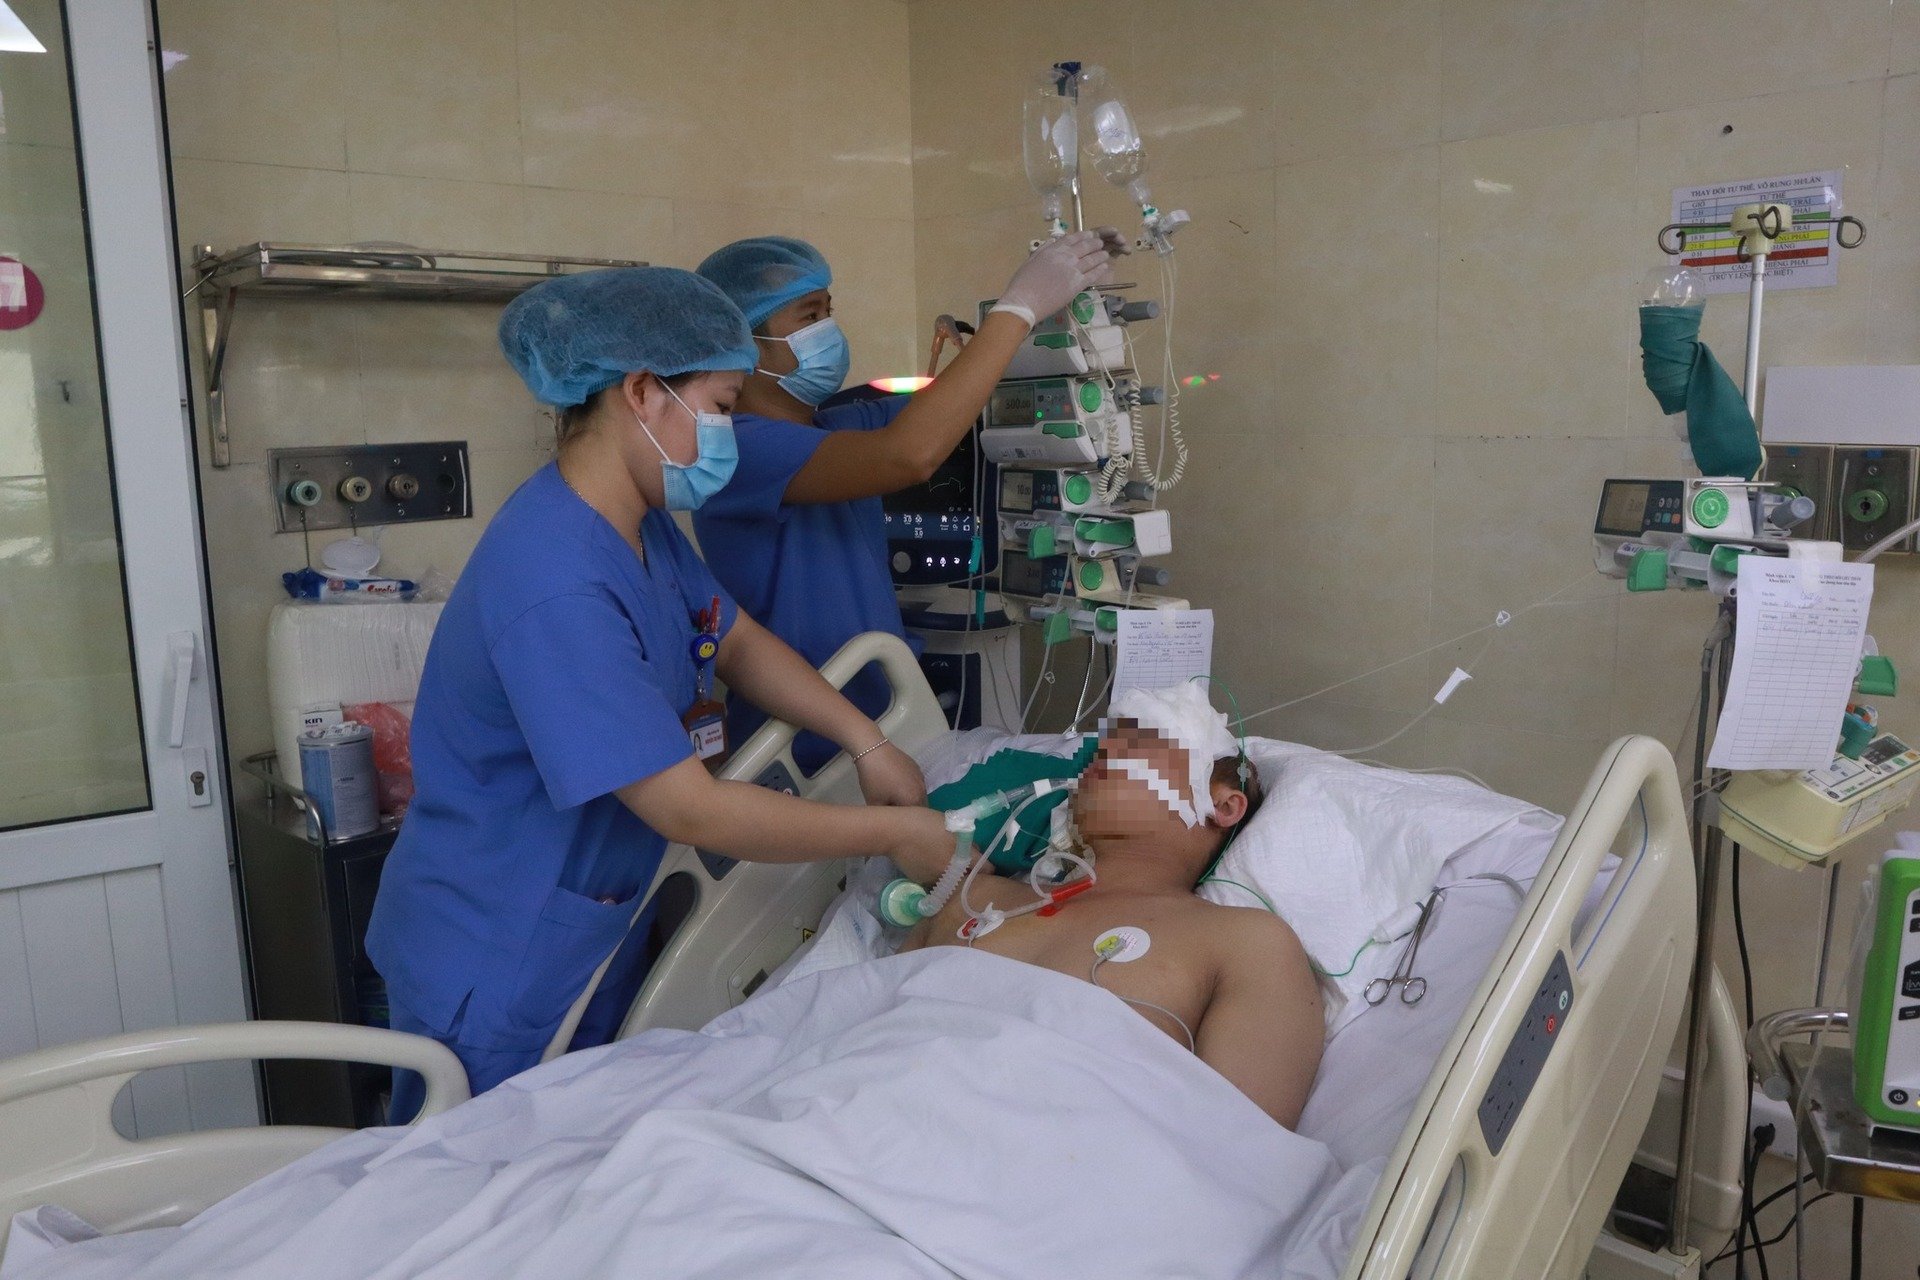 Một nạn nhân trong vụ tai nạn đang được điều trị - Ảnh bệnh viện E cung cấp